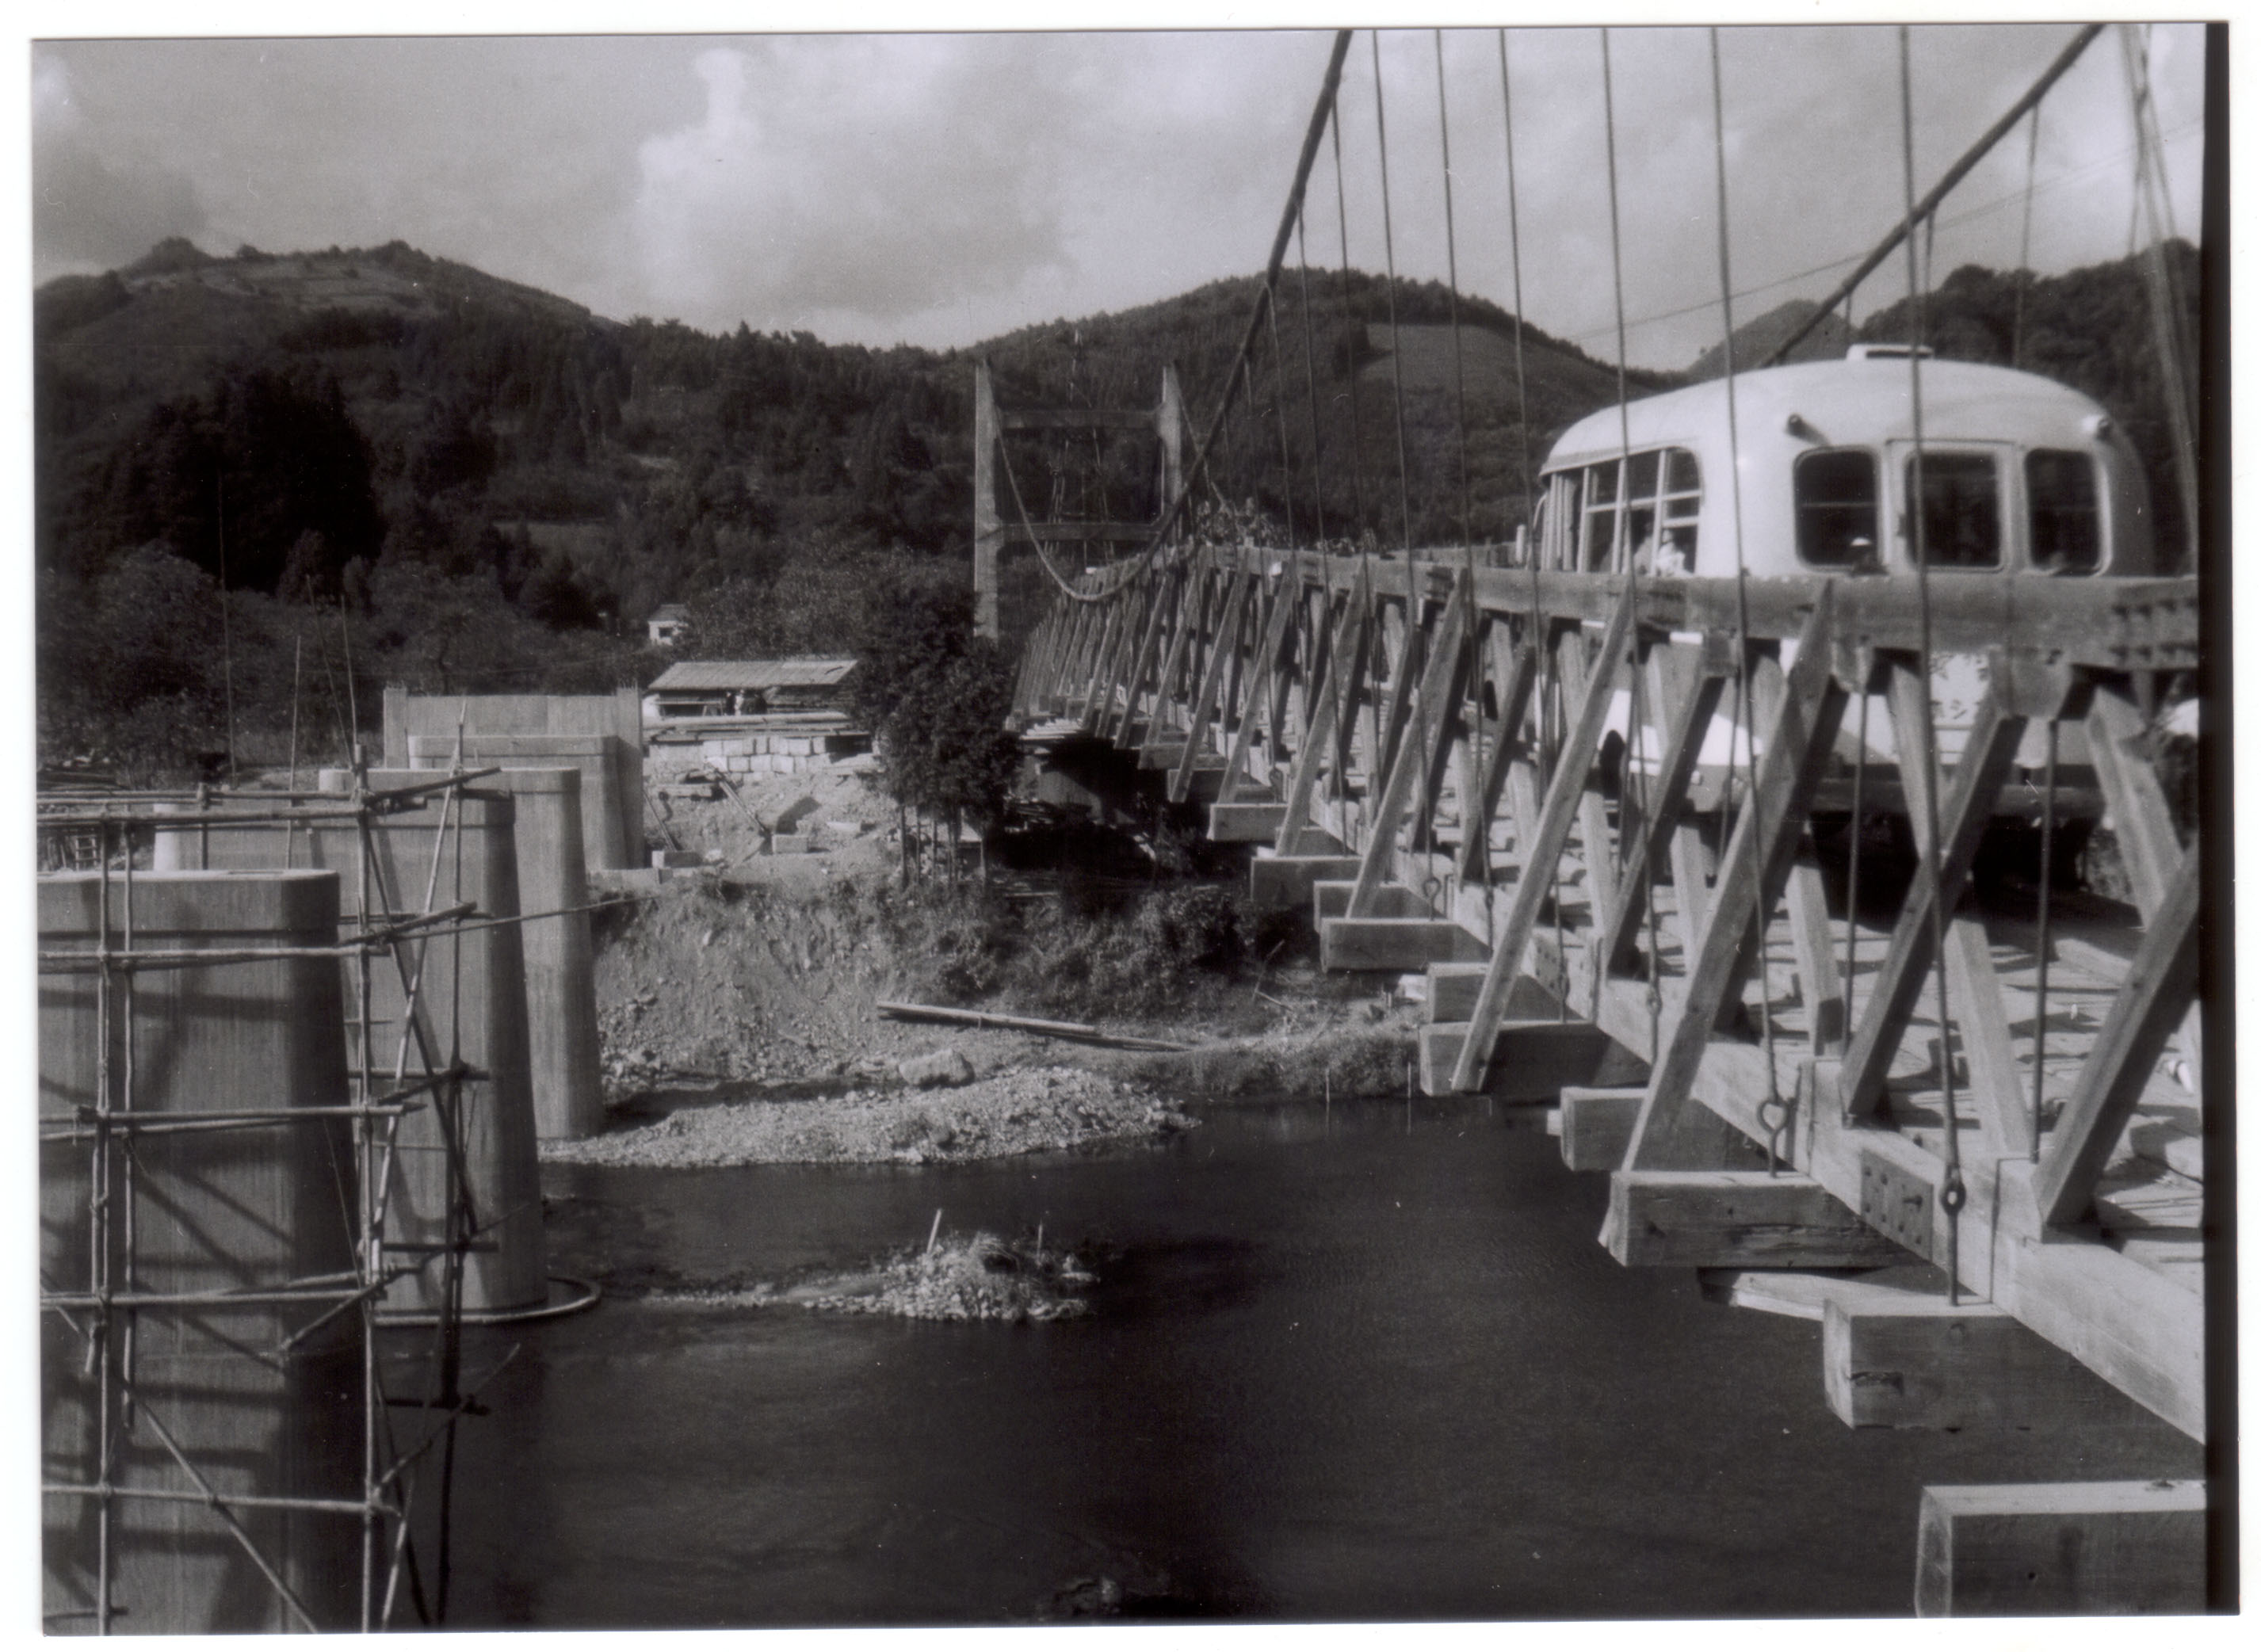 06工事中の新橋の横を走る井戸沢旧橋の乗合バス(昭和28年頃、板津弥吉氏撮影)